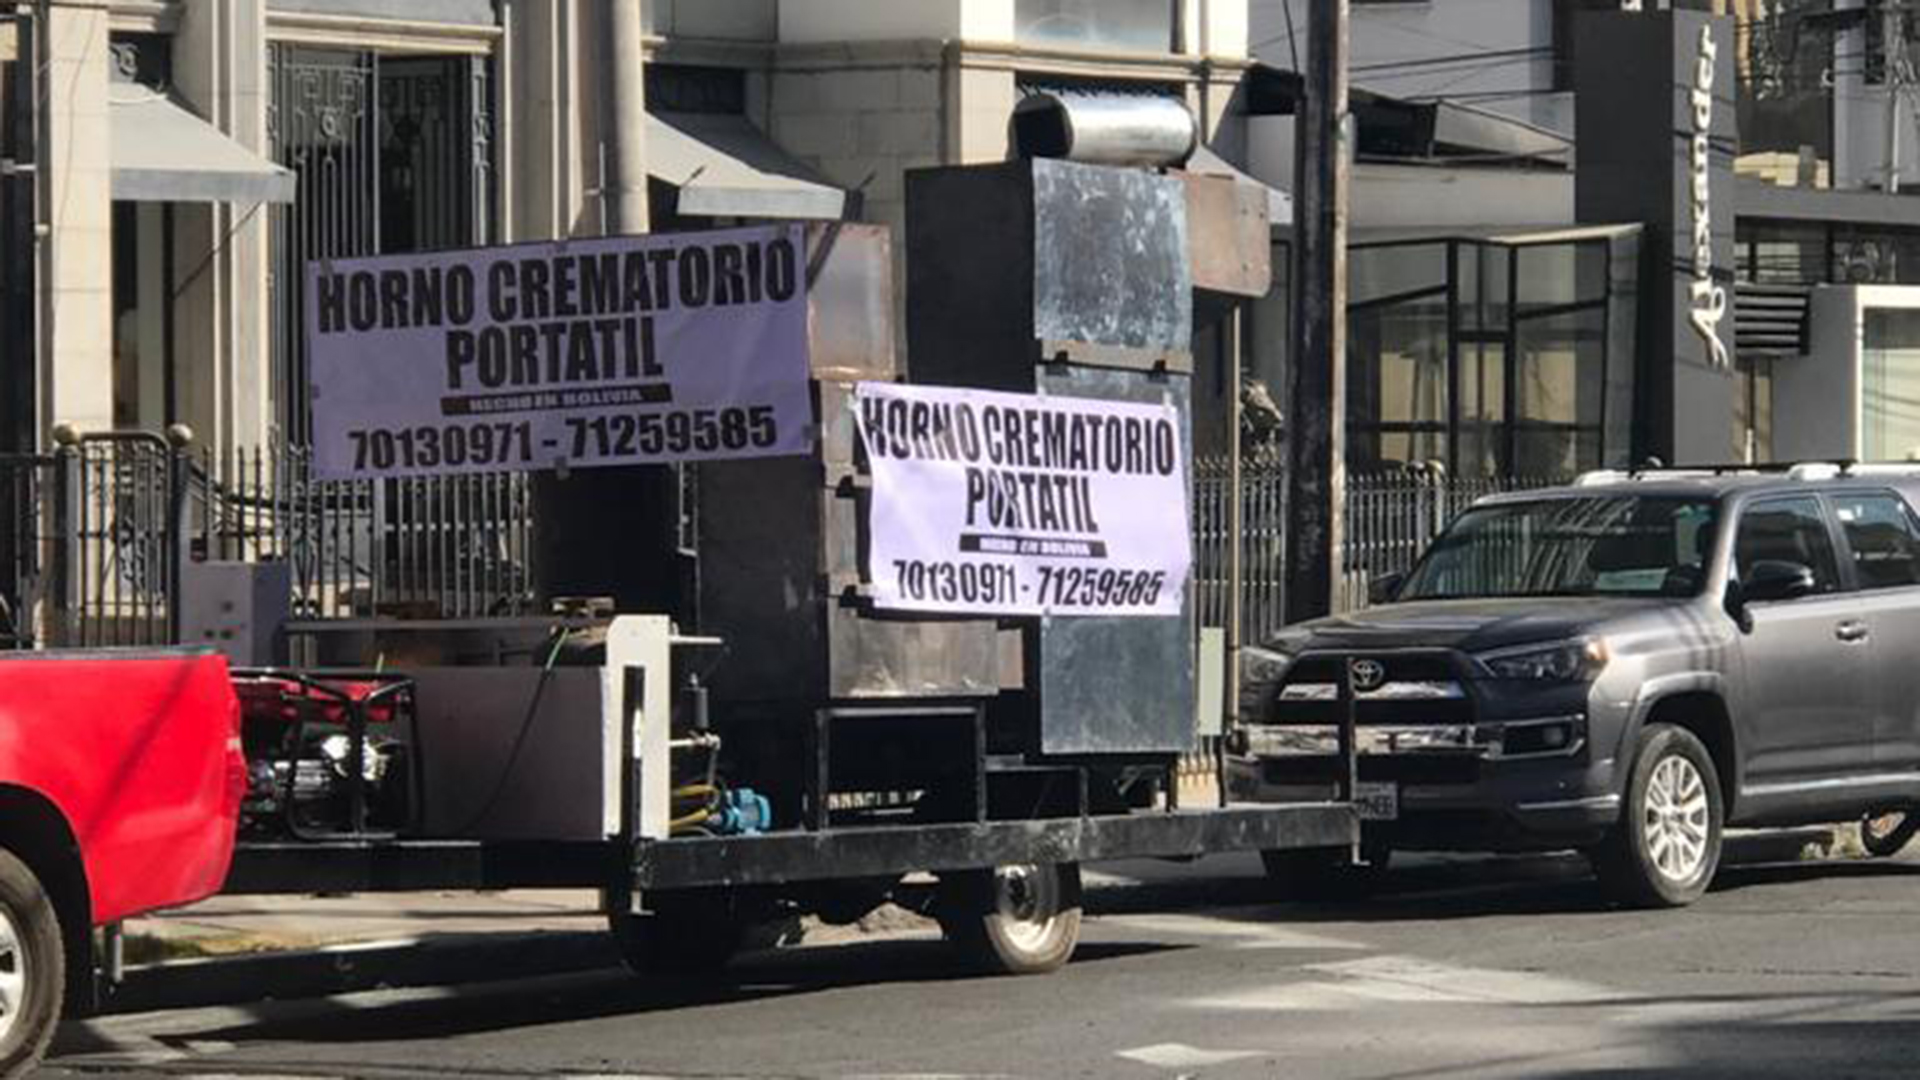 Empresarios bolivianos ofrecieron a municipalidades de Bolivia la adquisición de hornos crematorios portátiles